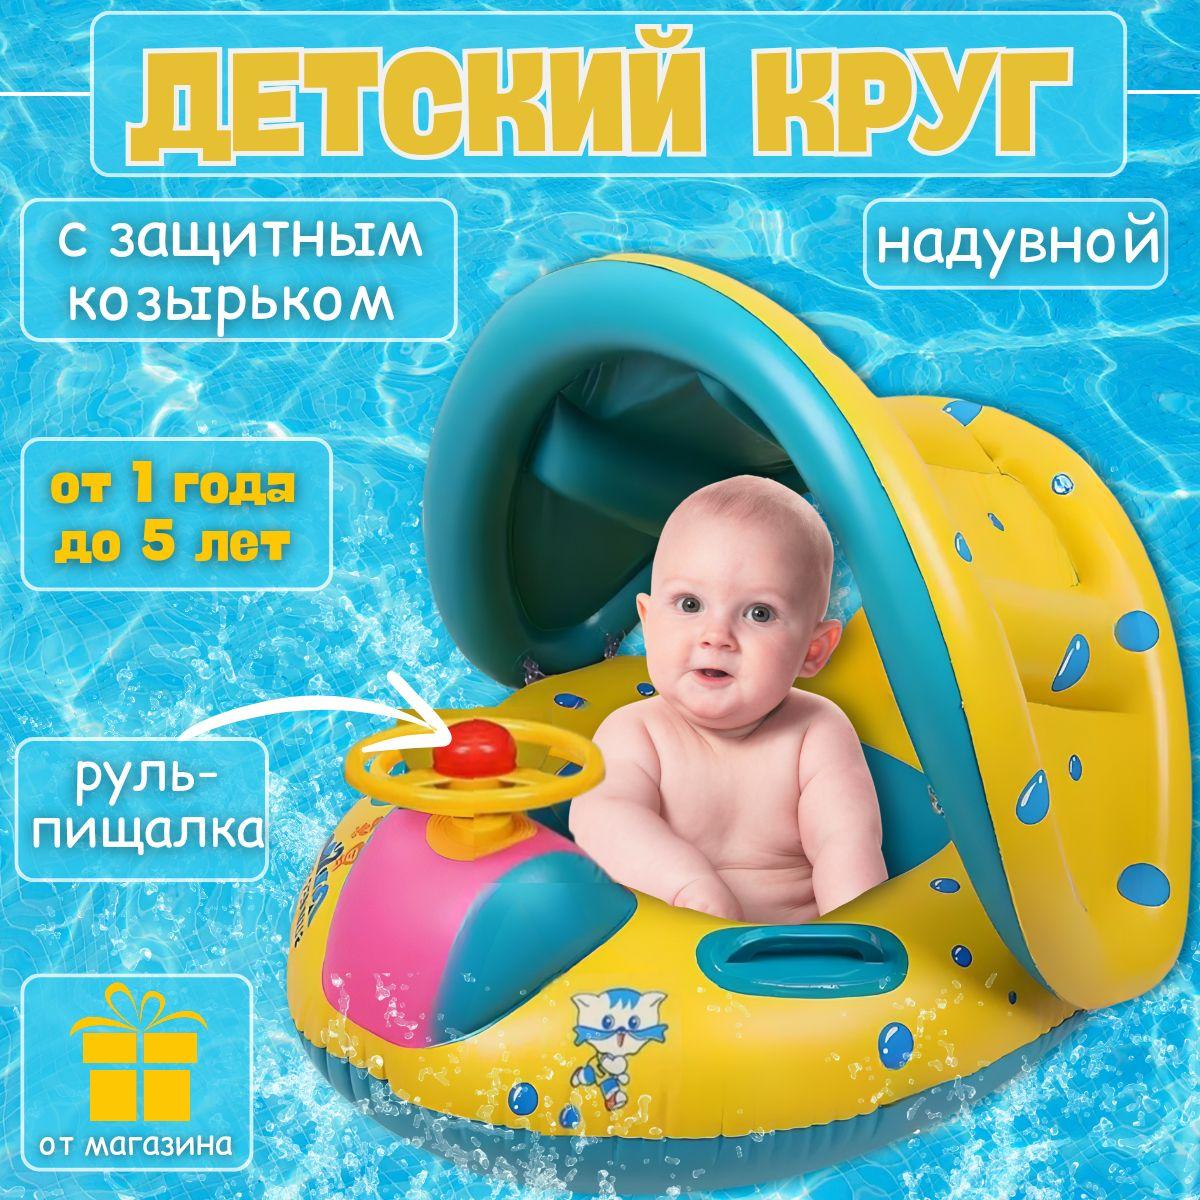 круг для плавания детский / Детский надувной круг машинка с крышей для плавания с отверстиями для ножек с навесом от солнца и спинкой